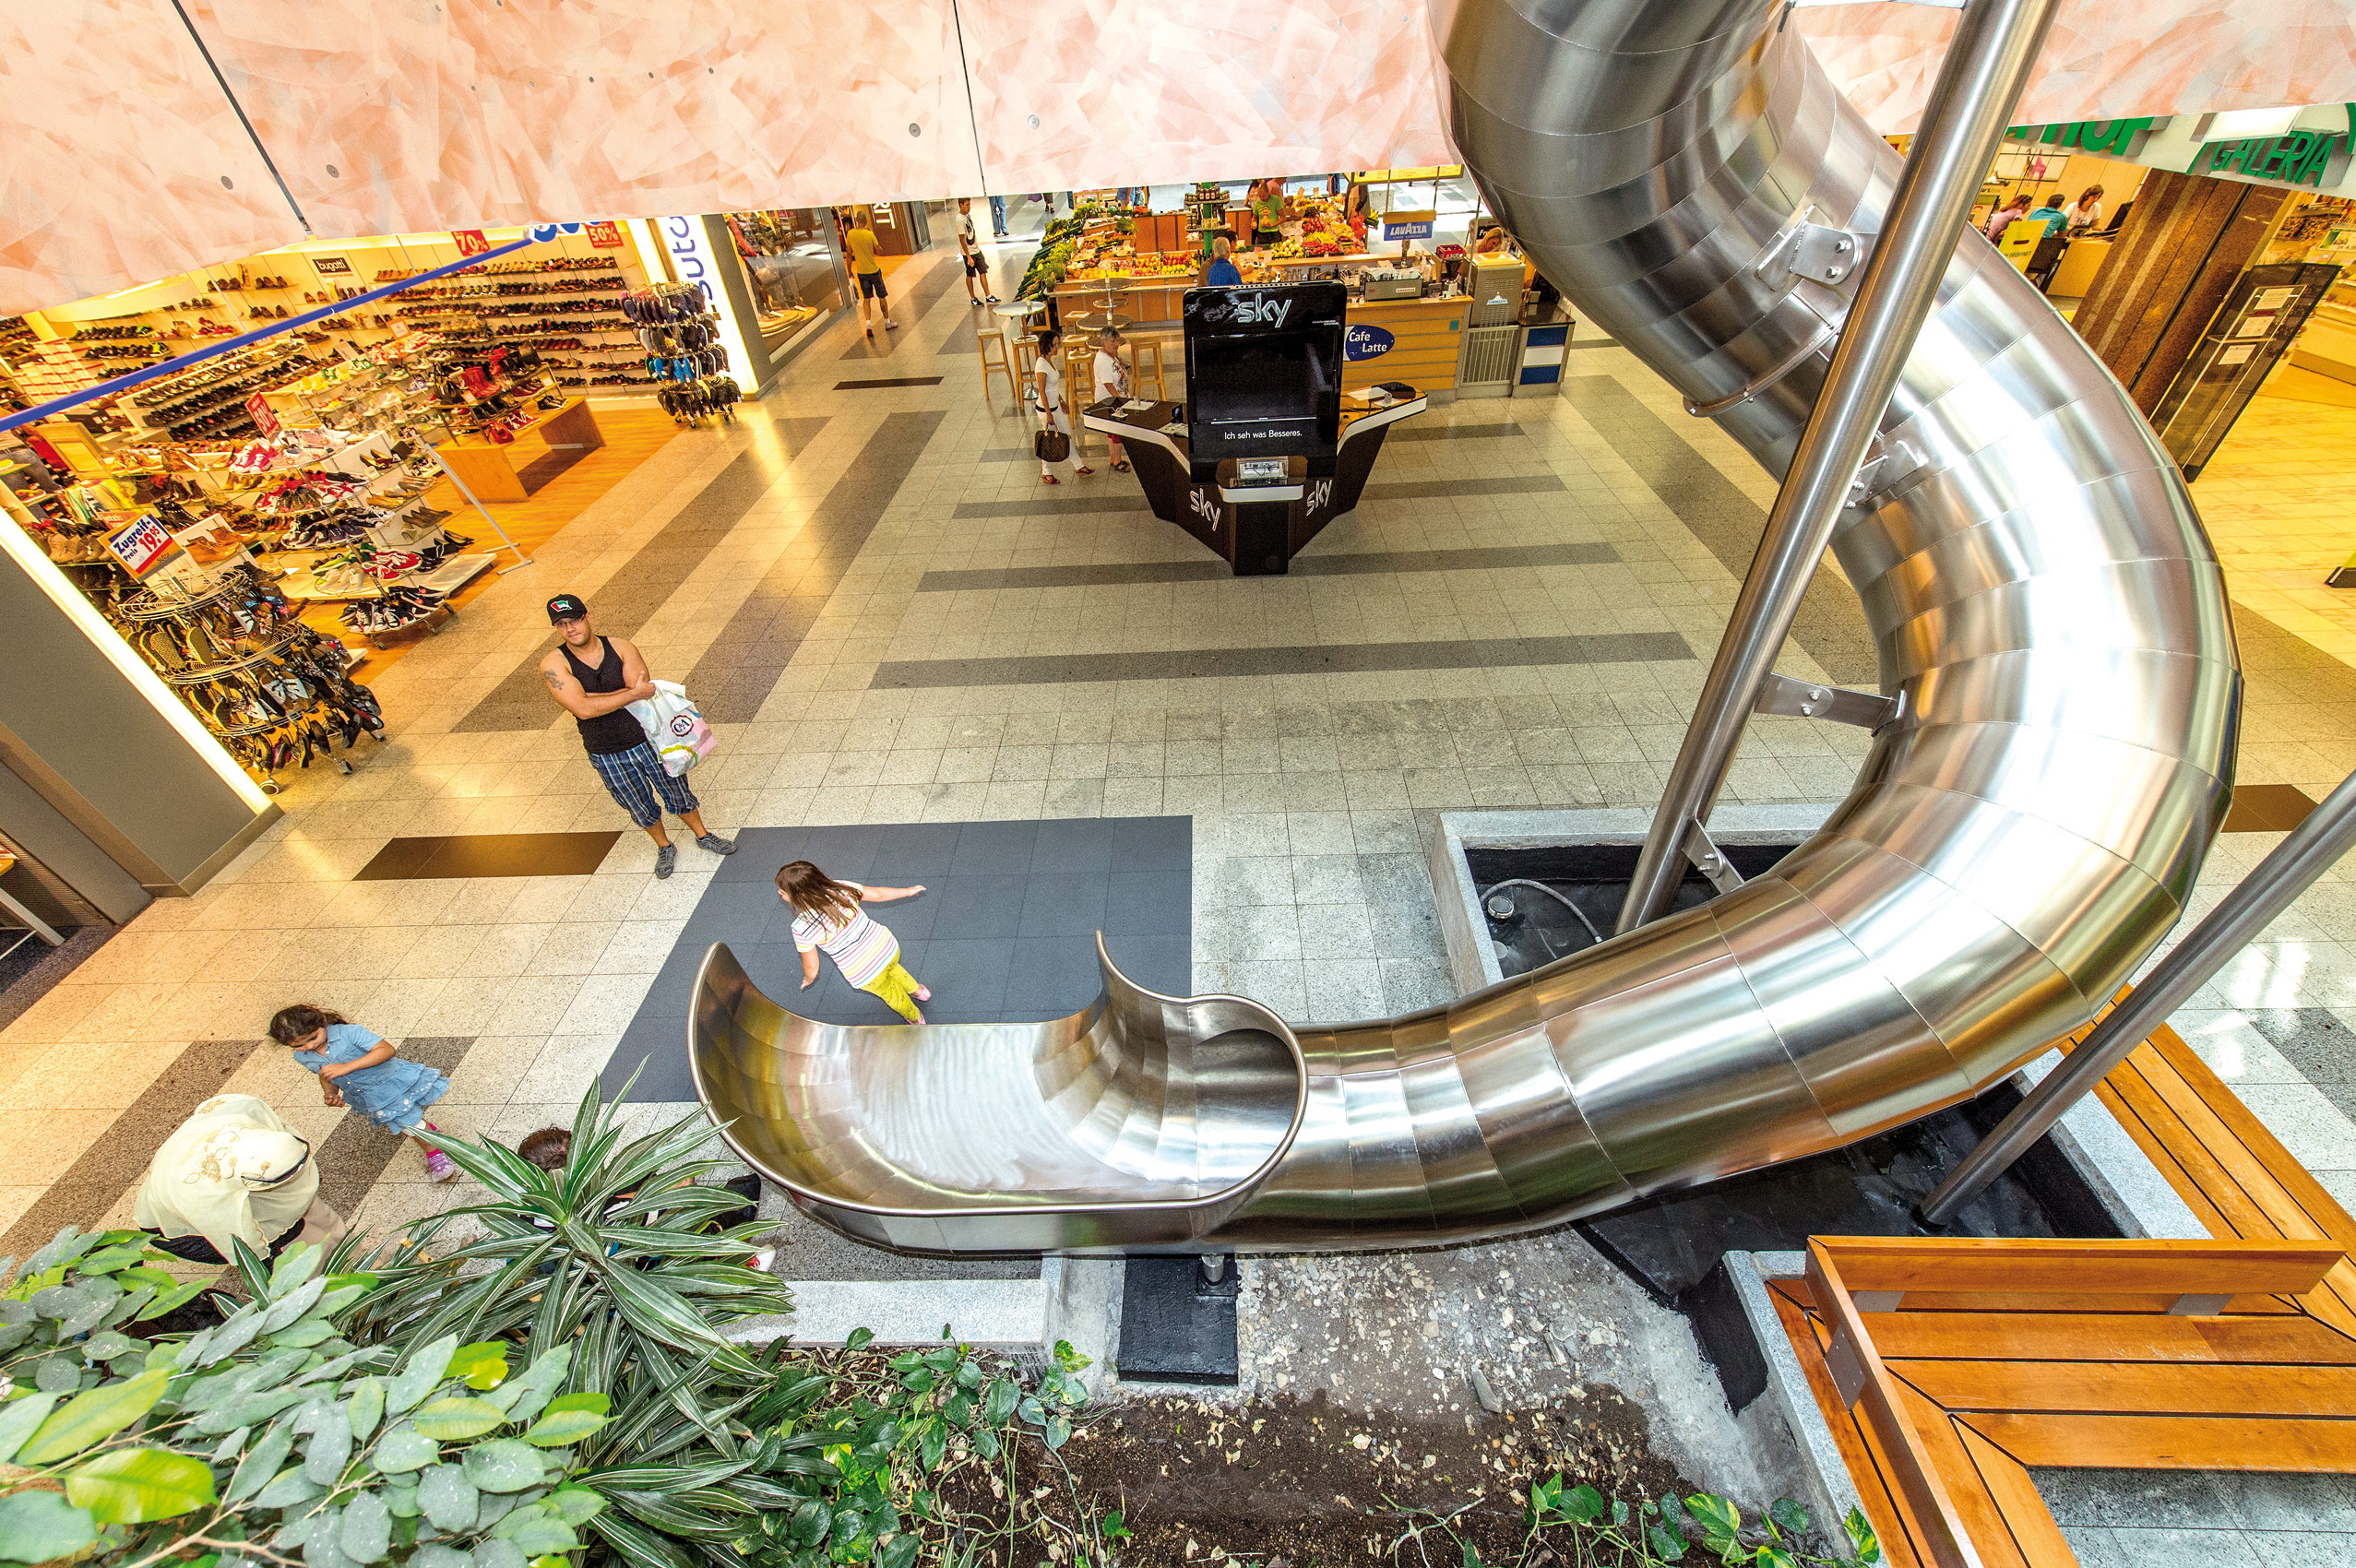 atlantics stainless steel slides shopping centre regensburg bayern shoppingcenter spiral 127343